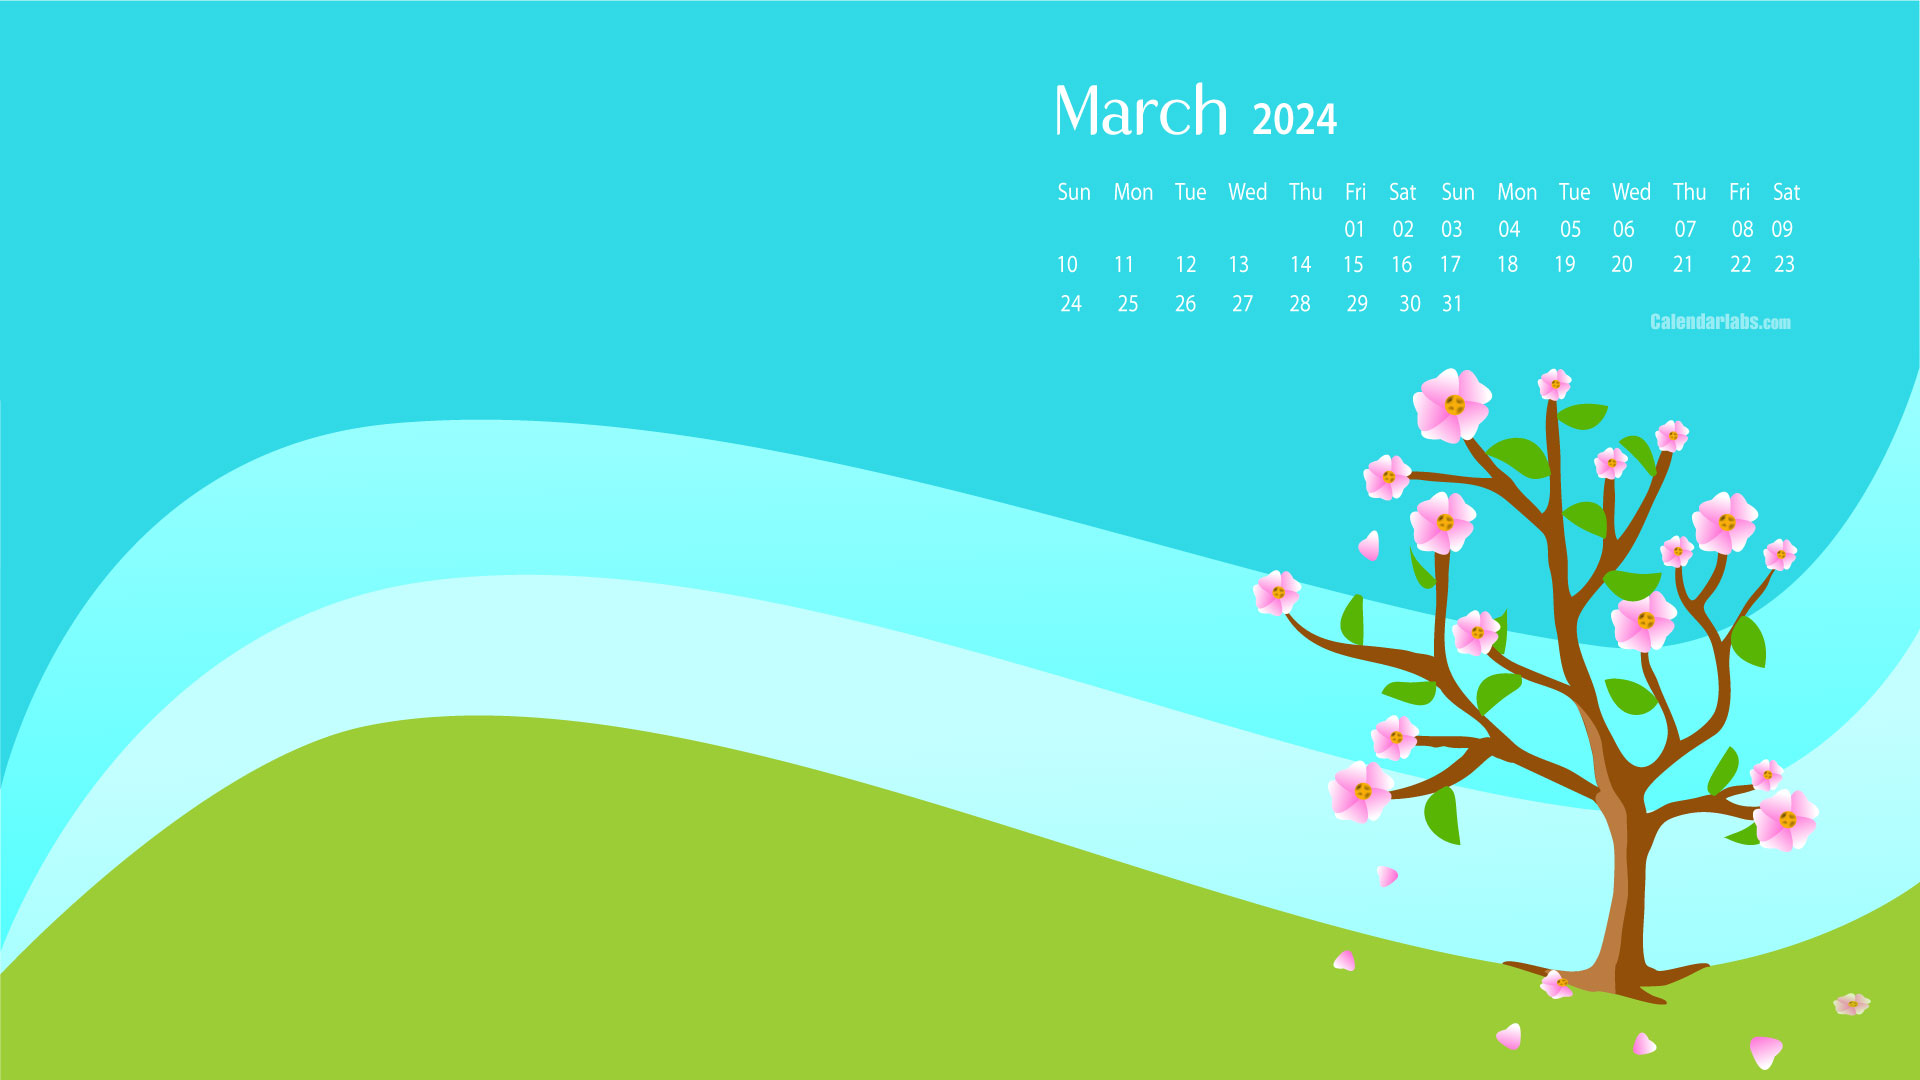 Chiêm ngưỡng bức tranh nền desktop lịch cho tháng 3 năm 2024 đầy sống động và nghệ thuật! Với gam màu đậm chất mùa xuân, bức tranh sẽ giúp bạn ghi nhớ những kế hoạch quan trọng trong tháng một cách hiệu quả và thú vị hơn. Hãy bấm vào ảnh để tải xuống ngay hôm nay!